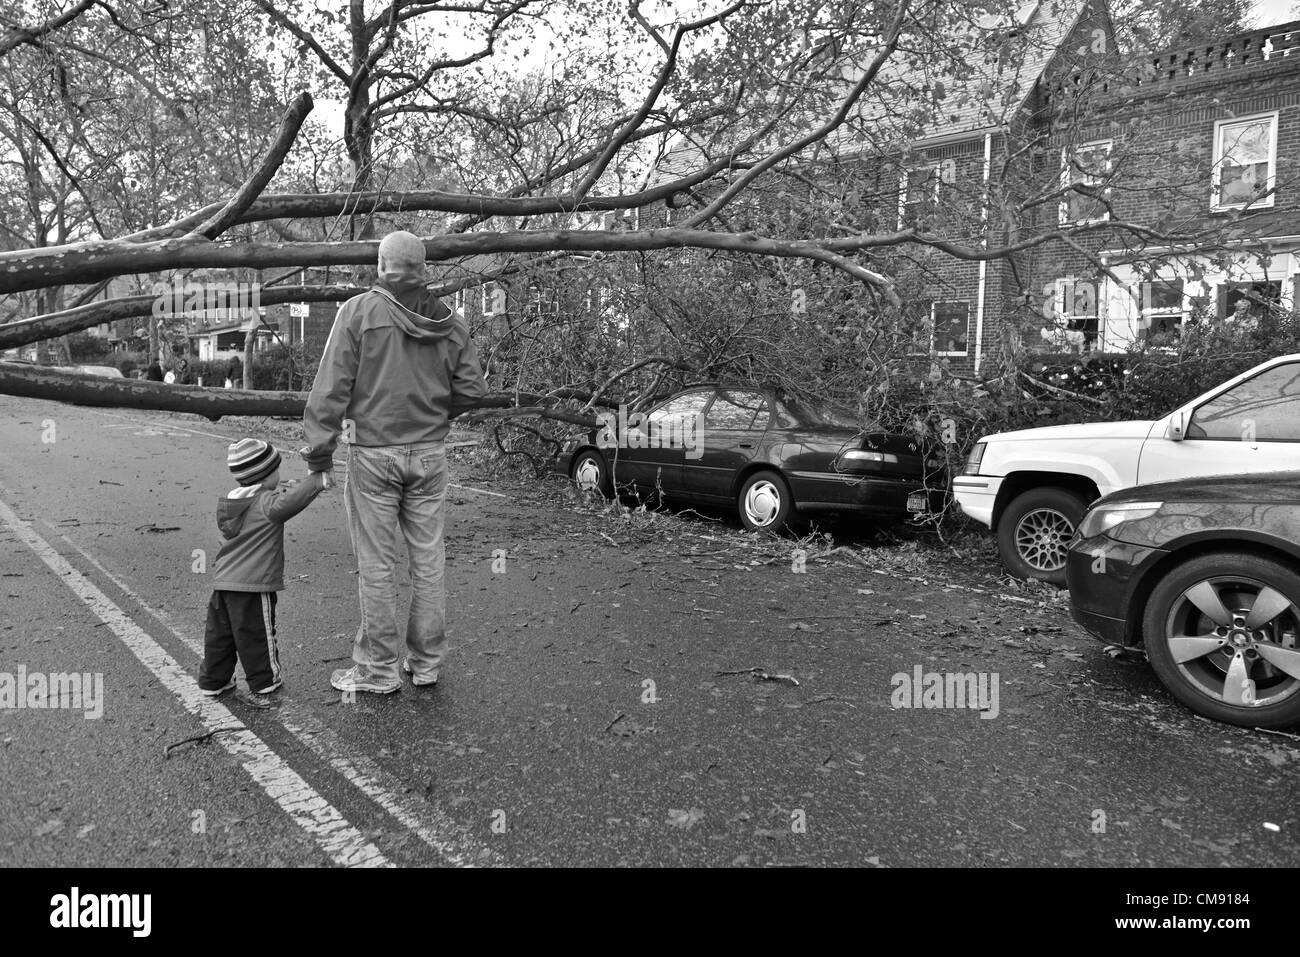 New York, USA. 30 octobre 2012. Lendemain de la tempête tropicale l'Ouragan Sandy super, Queens, New York, États-Unis - 30 octobre 2012 Banque D'Images